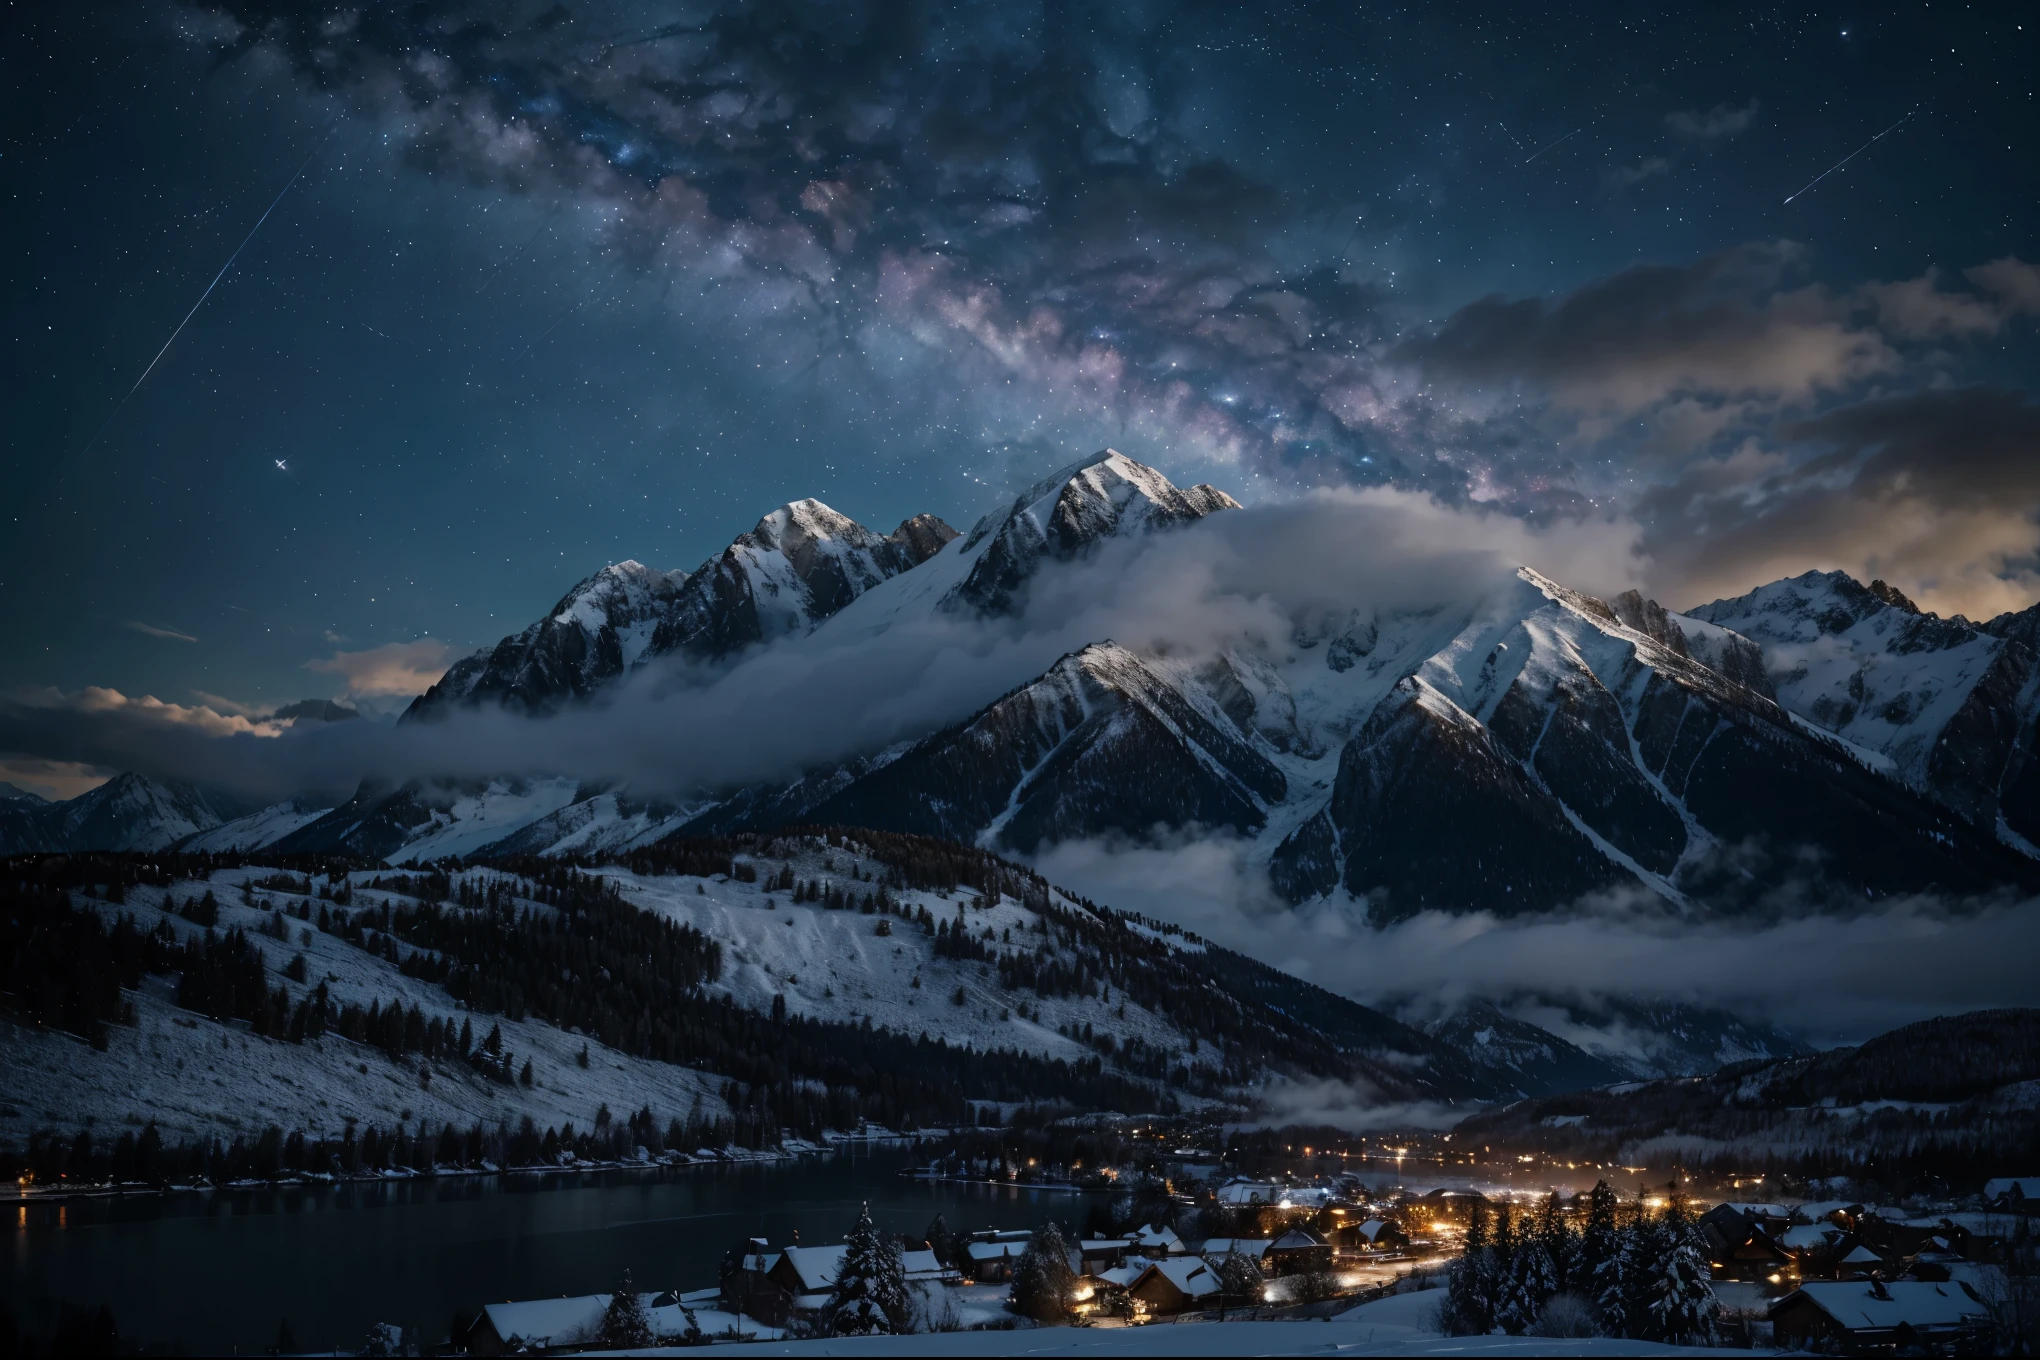 Fundo, muitas montanhas altas, Muitas nuvens, Céu de inverno, vendo constelações, galáxia, via Láctea, linda noite de inverno com papel de parede de cidade pequena, Lindo lago, detalhes altos, Realista 8K Full HD.
